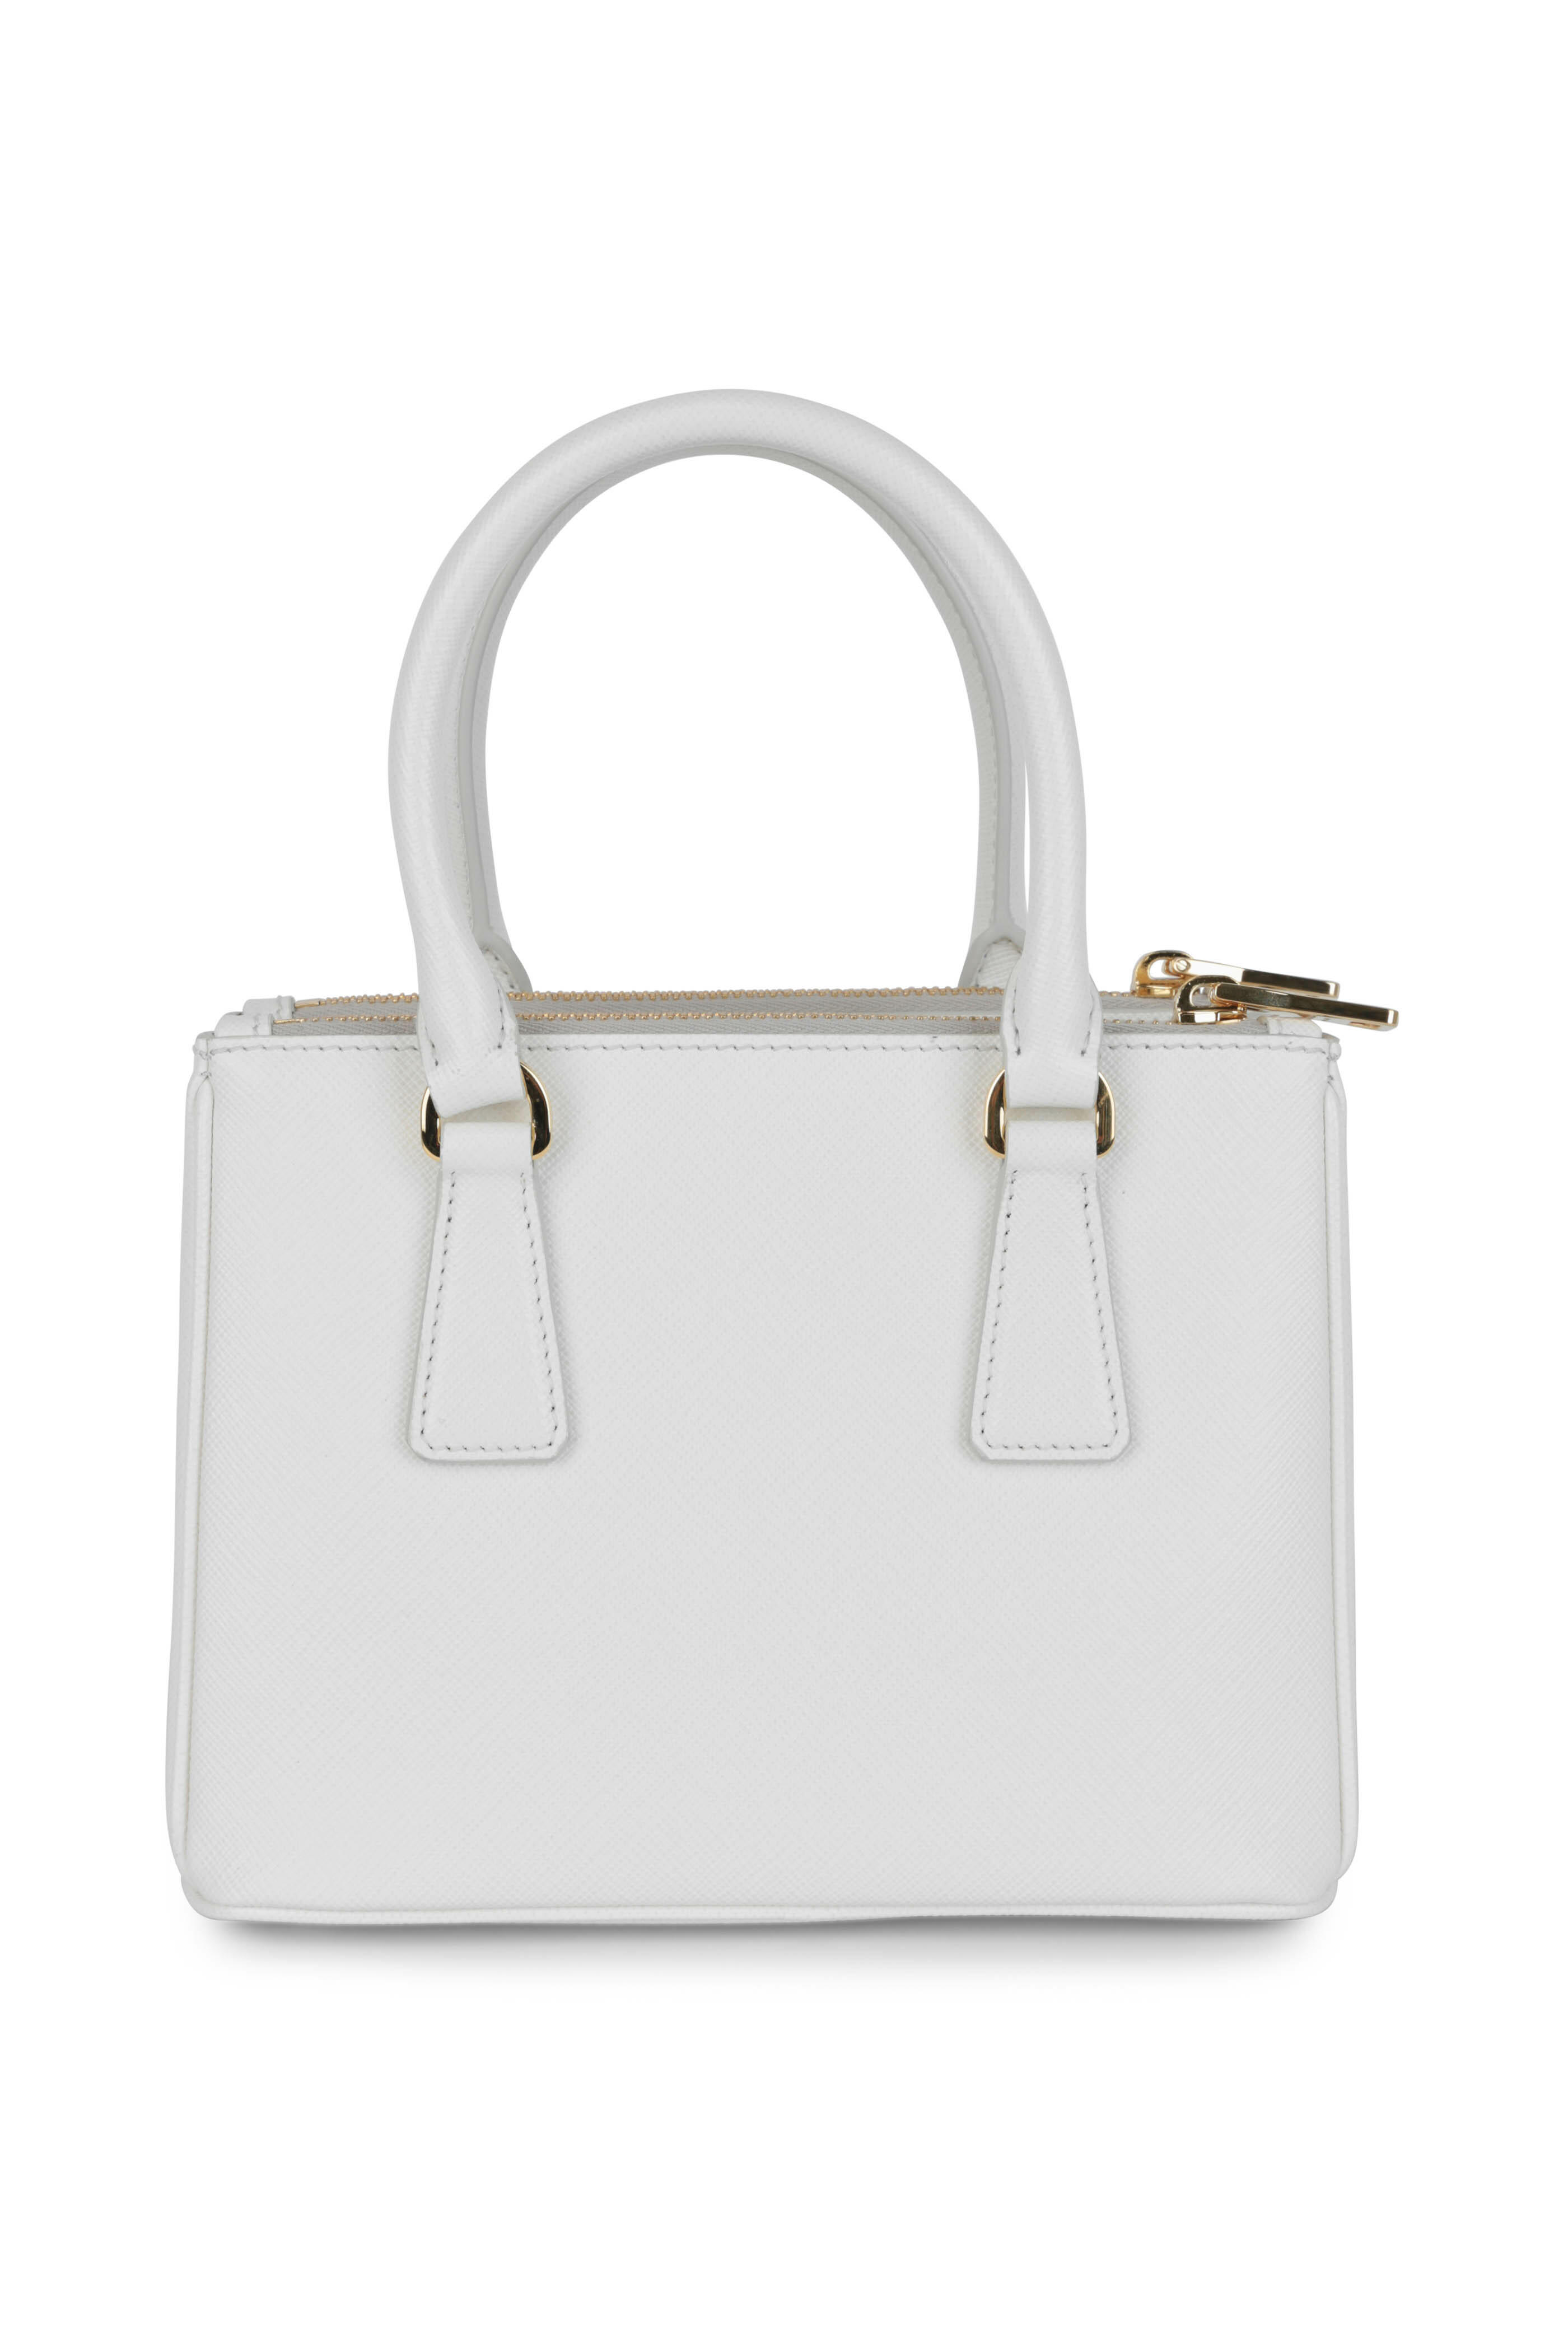 Prada Saffiano Mini Galleria Crossbody Bag, White (Talco)